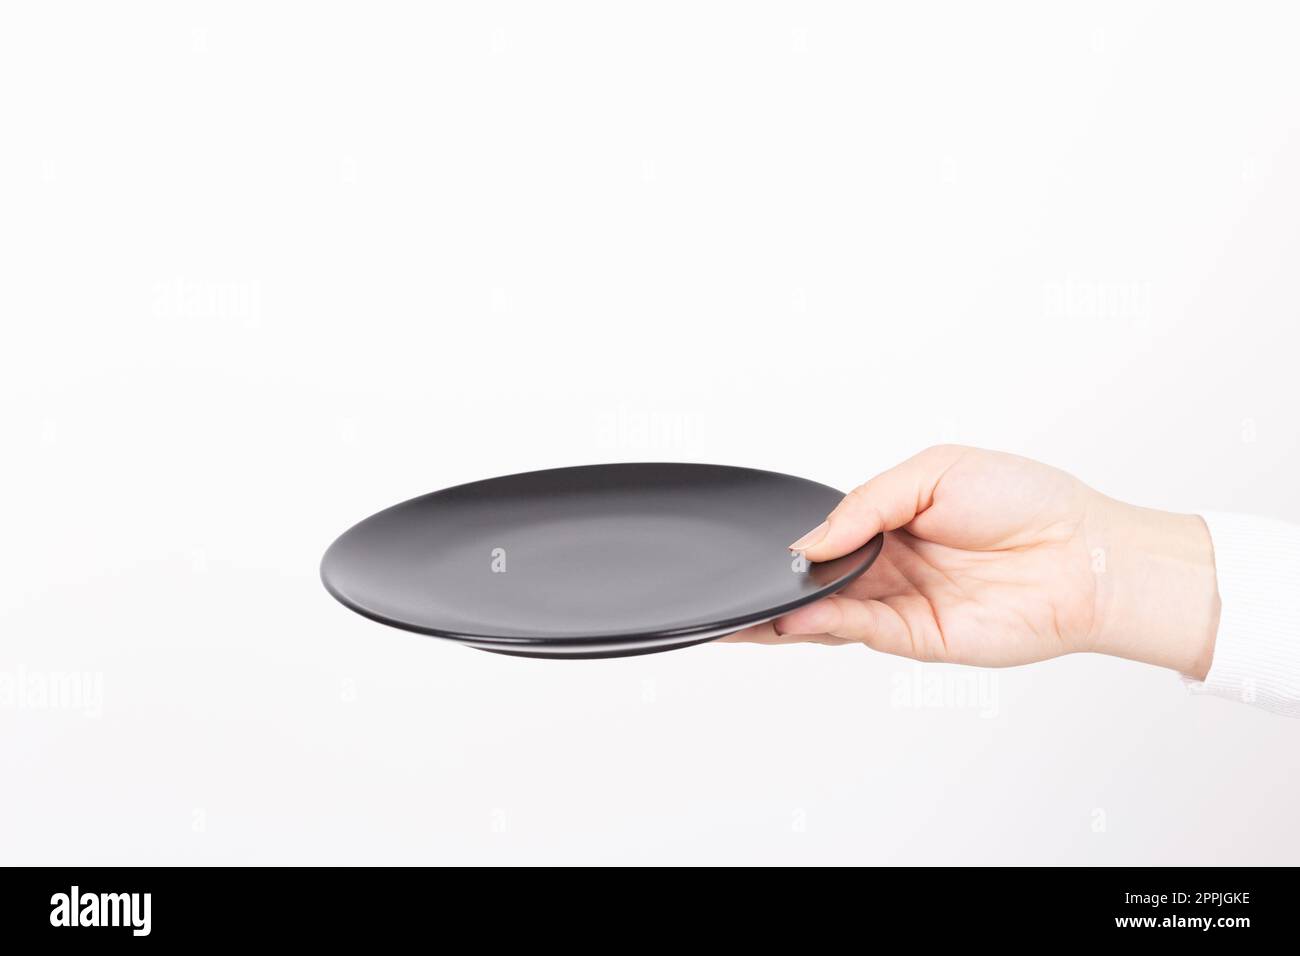 un piatto nero vuoto è presentato da una mano femminile Foto Stock